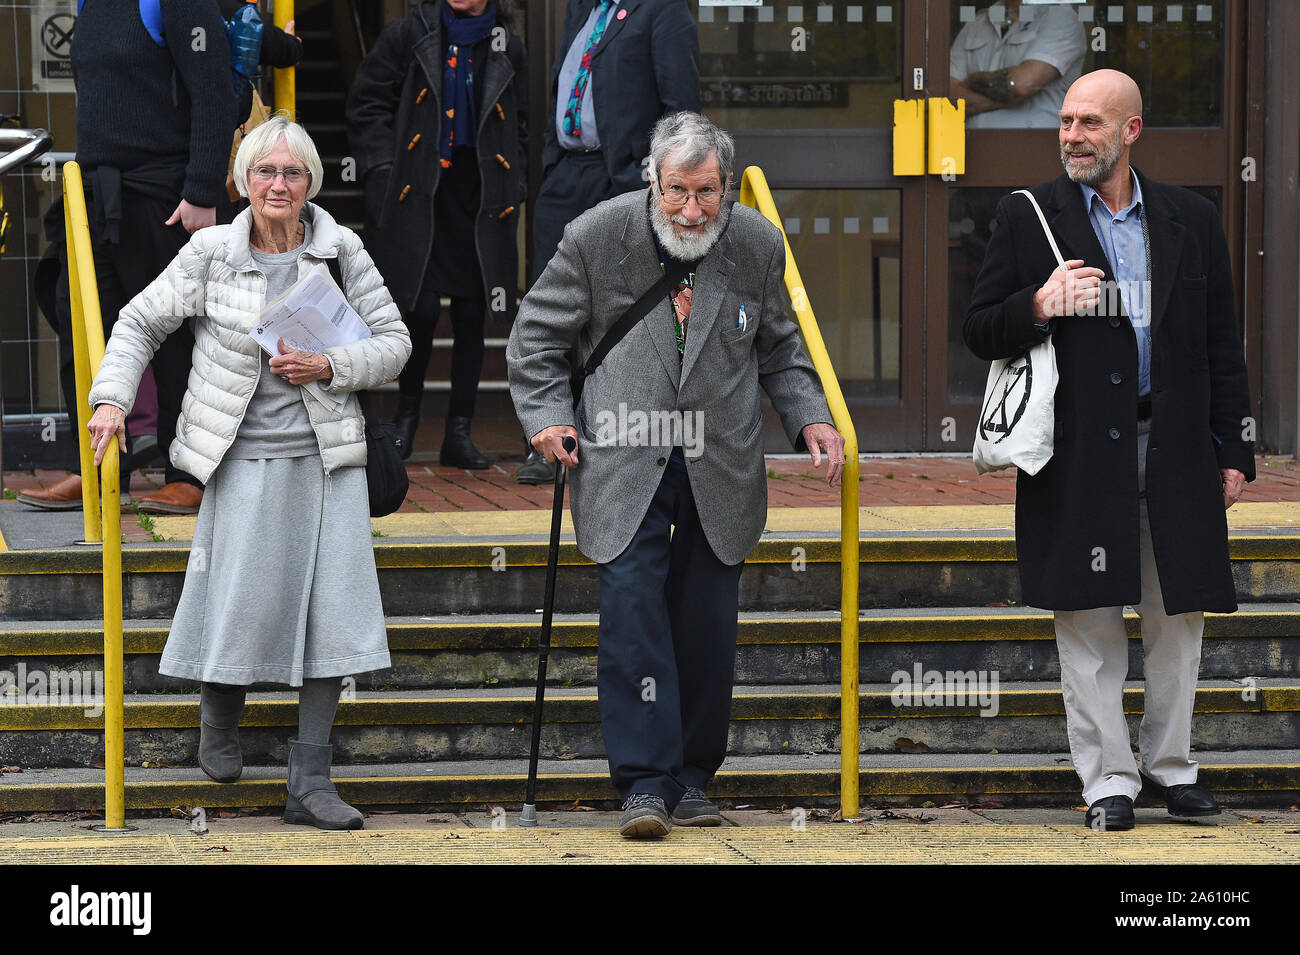 (De izquierda a derecha) Extinción activistas rebelión Ursula Pethick, de 83 años, John Lynes, 91 y Juan Halladay, de 61 años, dejando a Folkestone, magistrados de la corte donde se apareció por su parte en el "bloqueo" del puerto de Dover en septiembre. Foto de stock